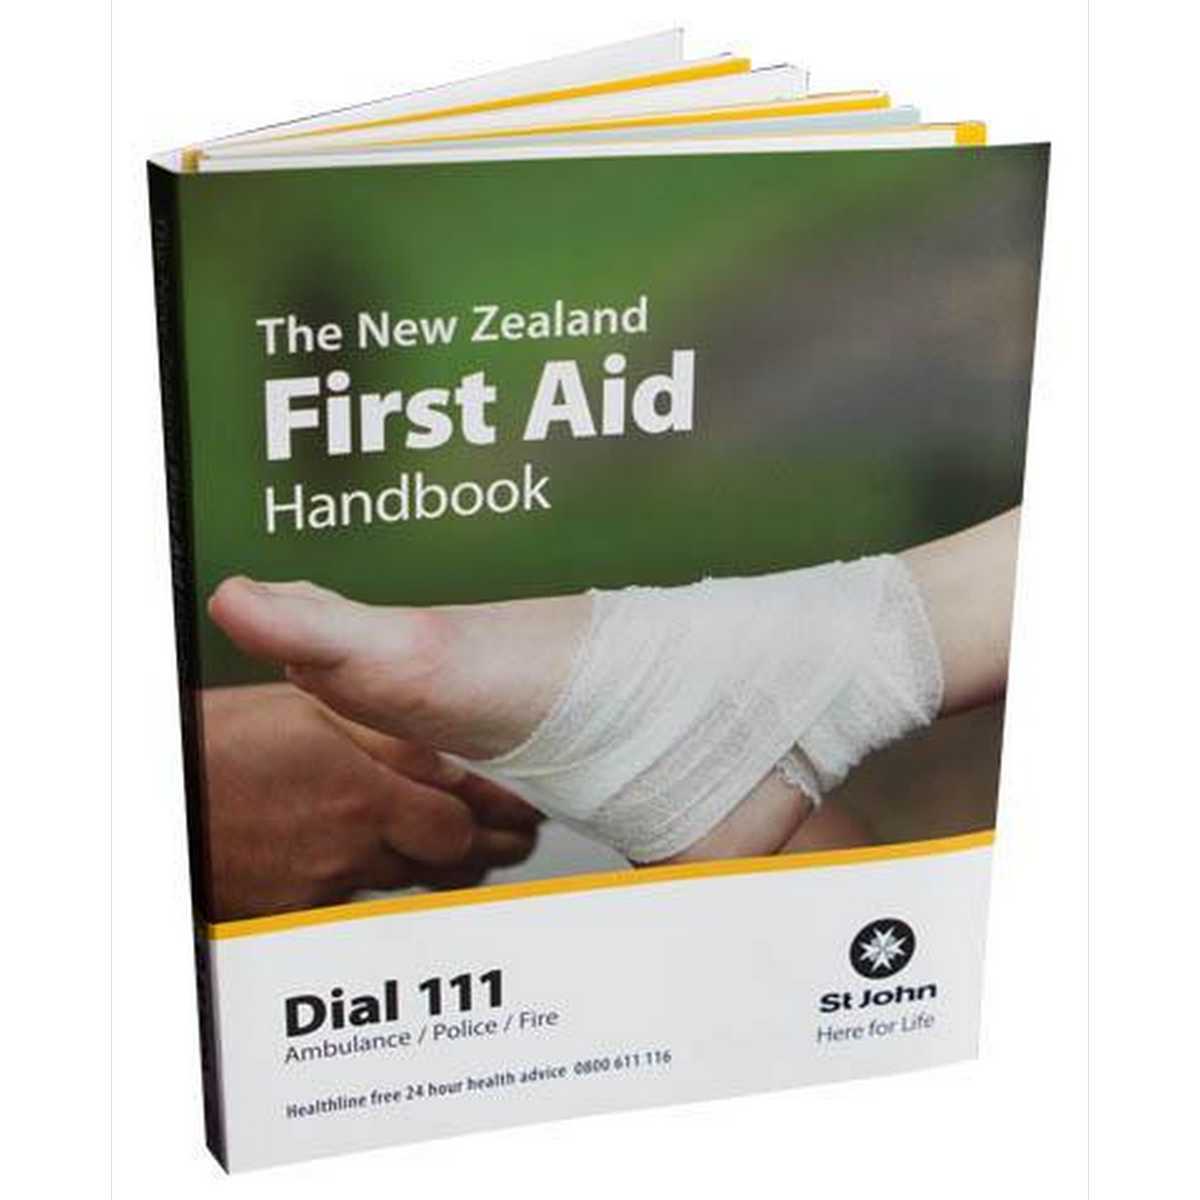 St John First Aid Handbook